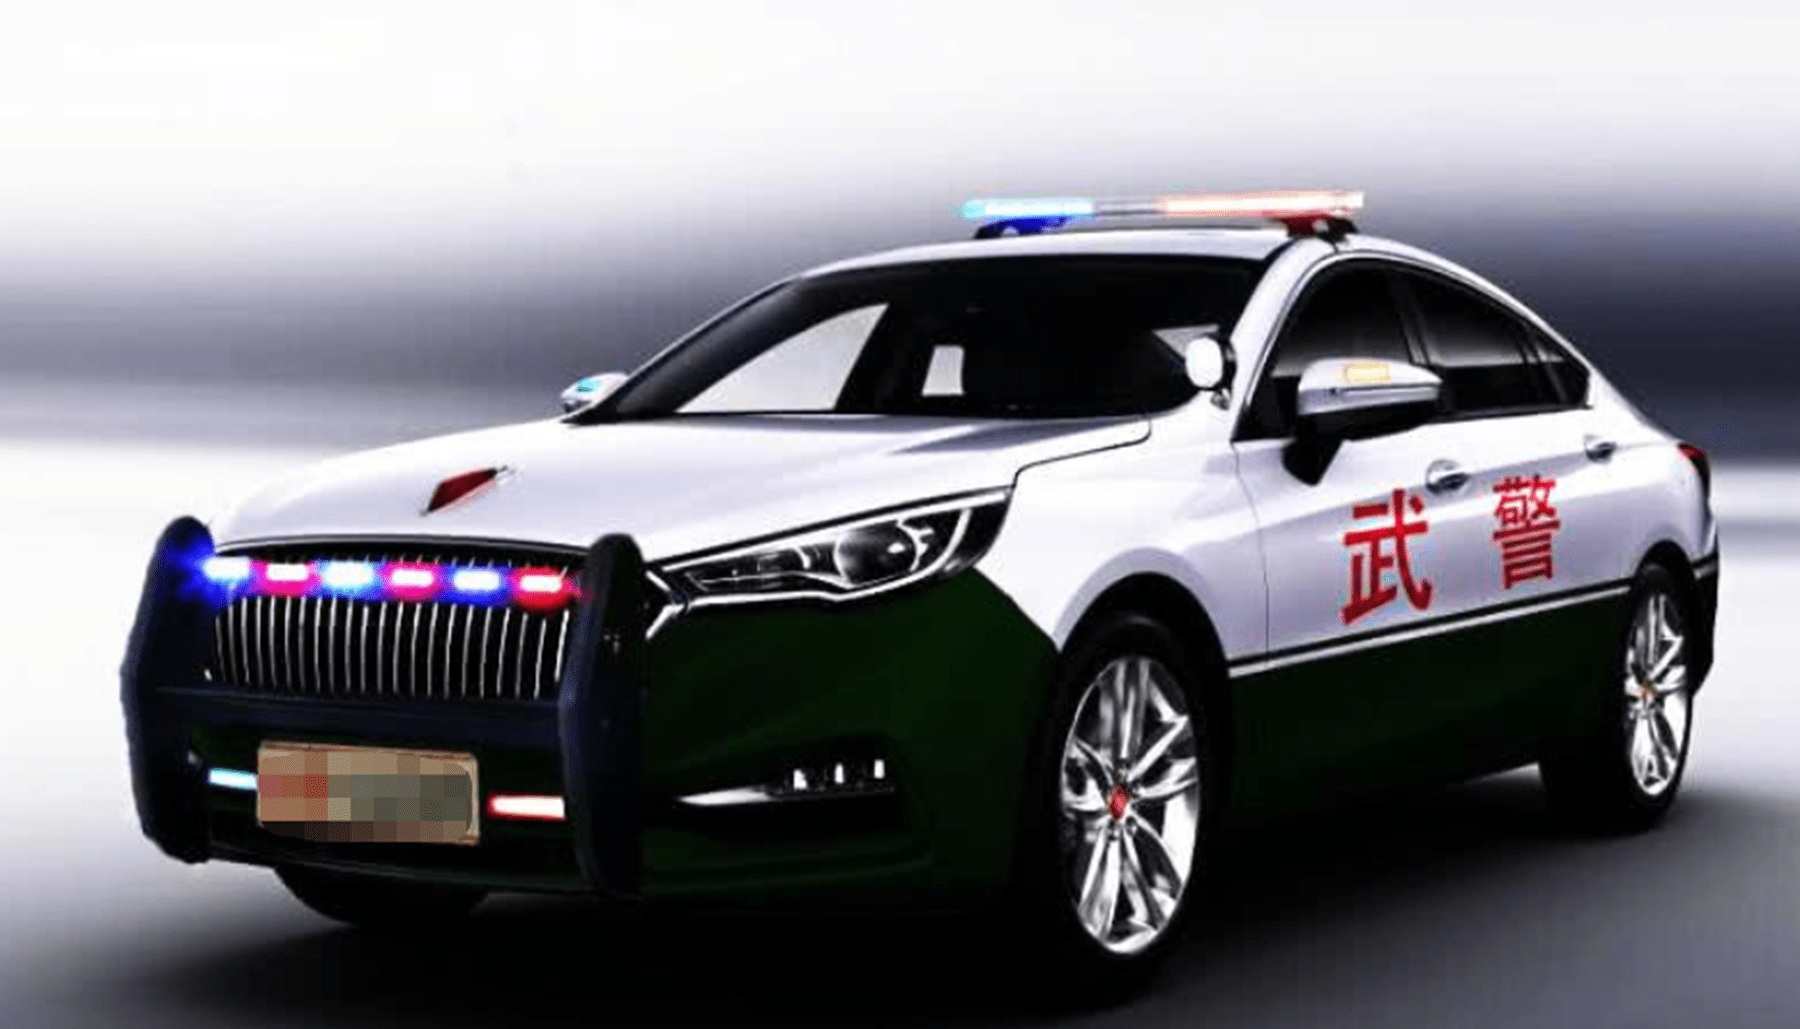 中国武警警车图片图片